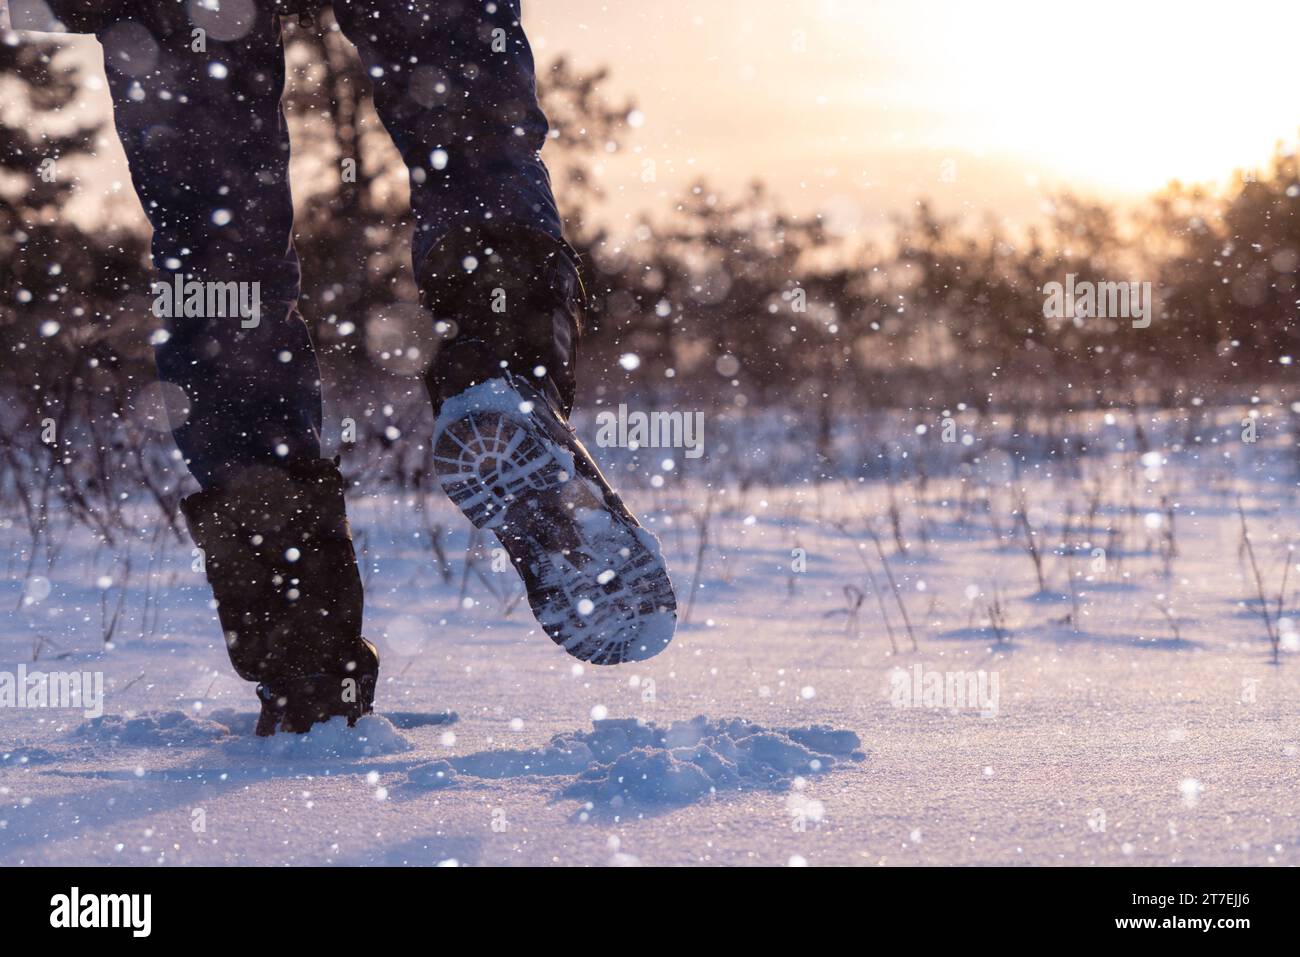 Un voyageur en bottes marche le long d'une route hivernale enneigée. Banque D'Images